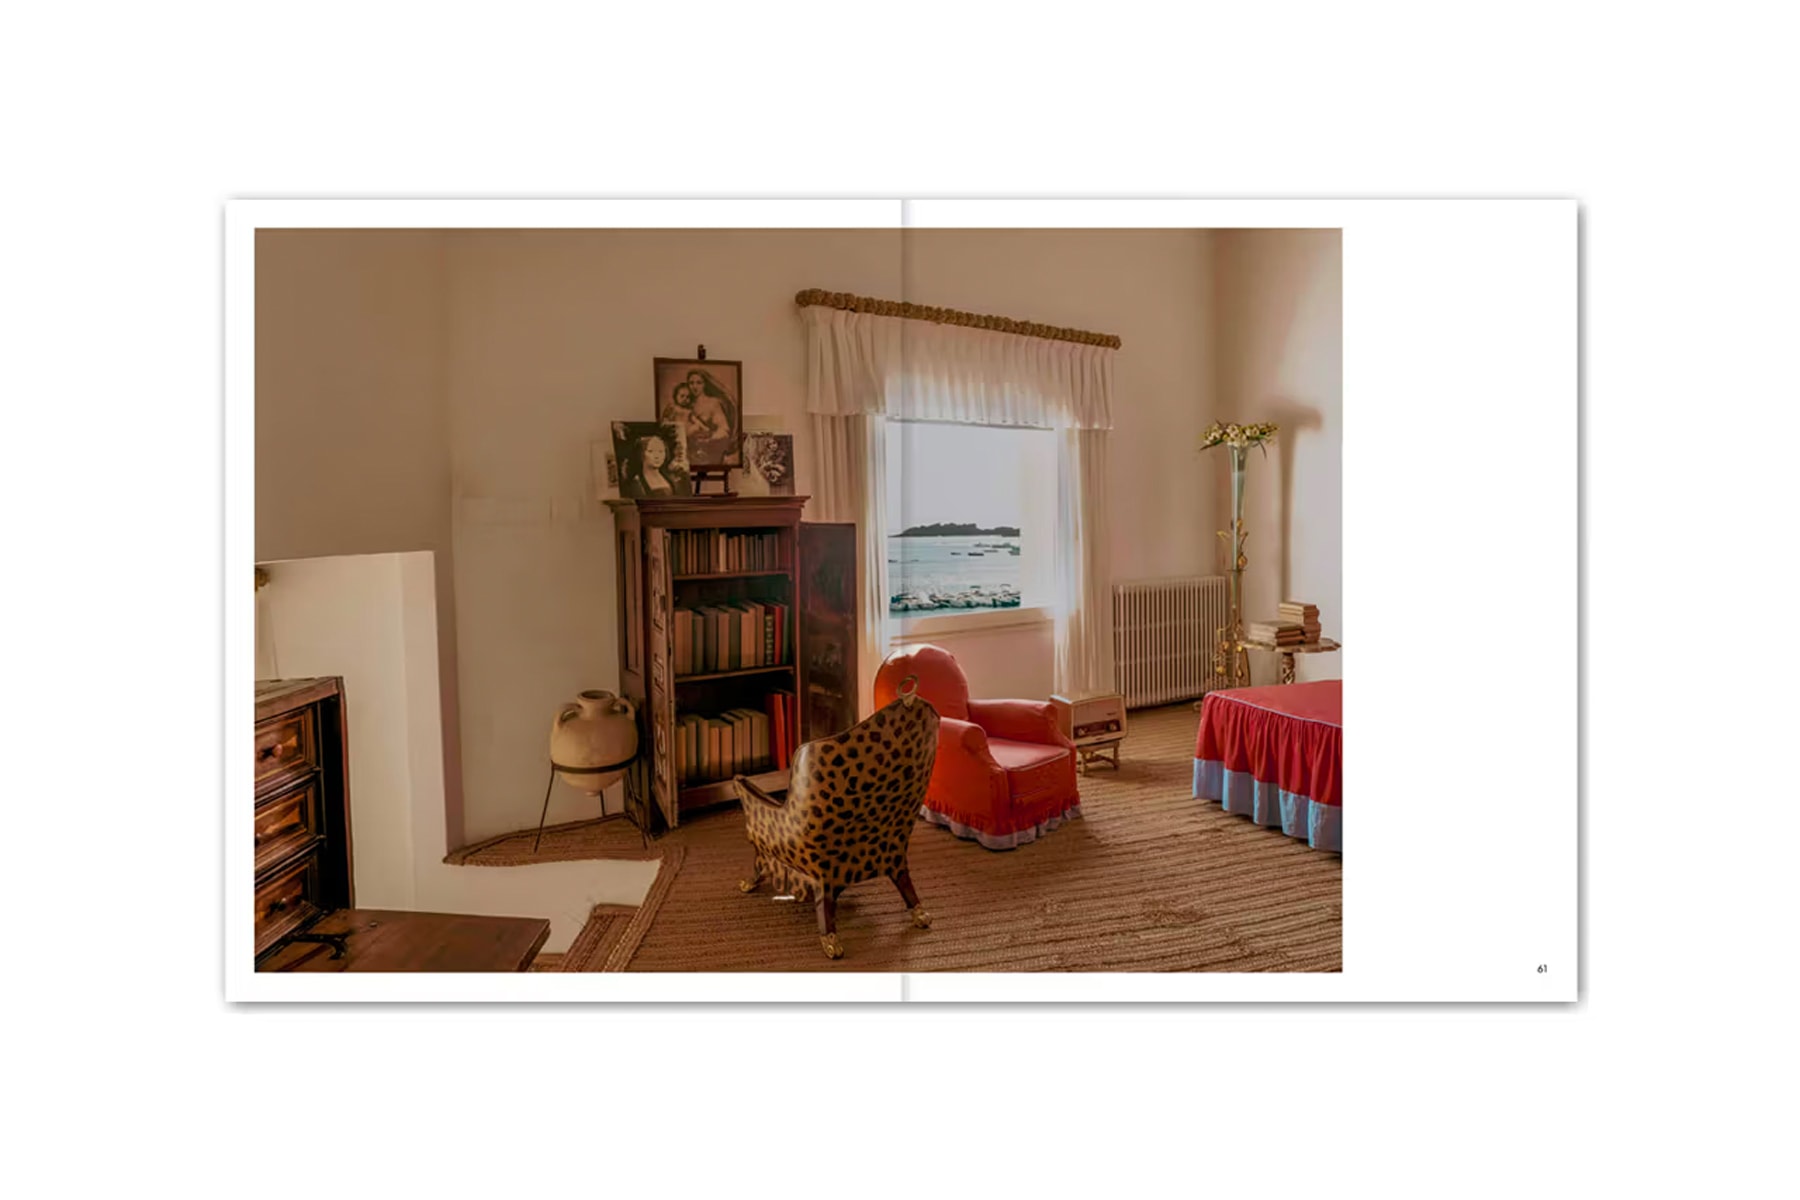 室內設計雜誌 Apartamento 全新書籍完整展示 Salvador Dalí 達利住宅樣貌